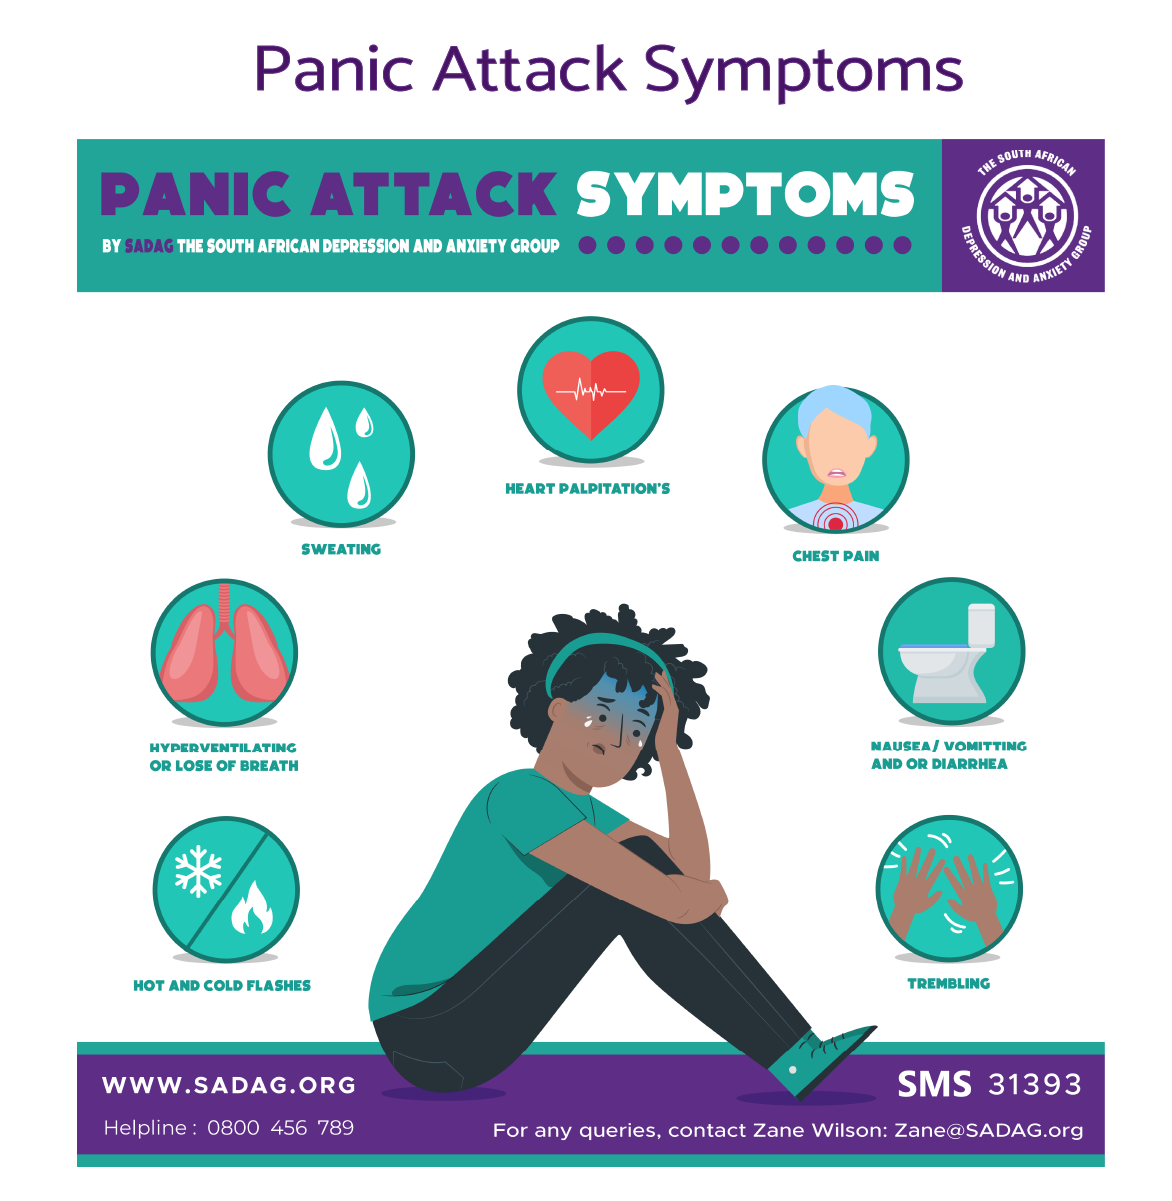 Symptoms Poster